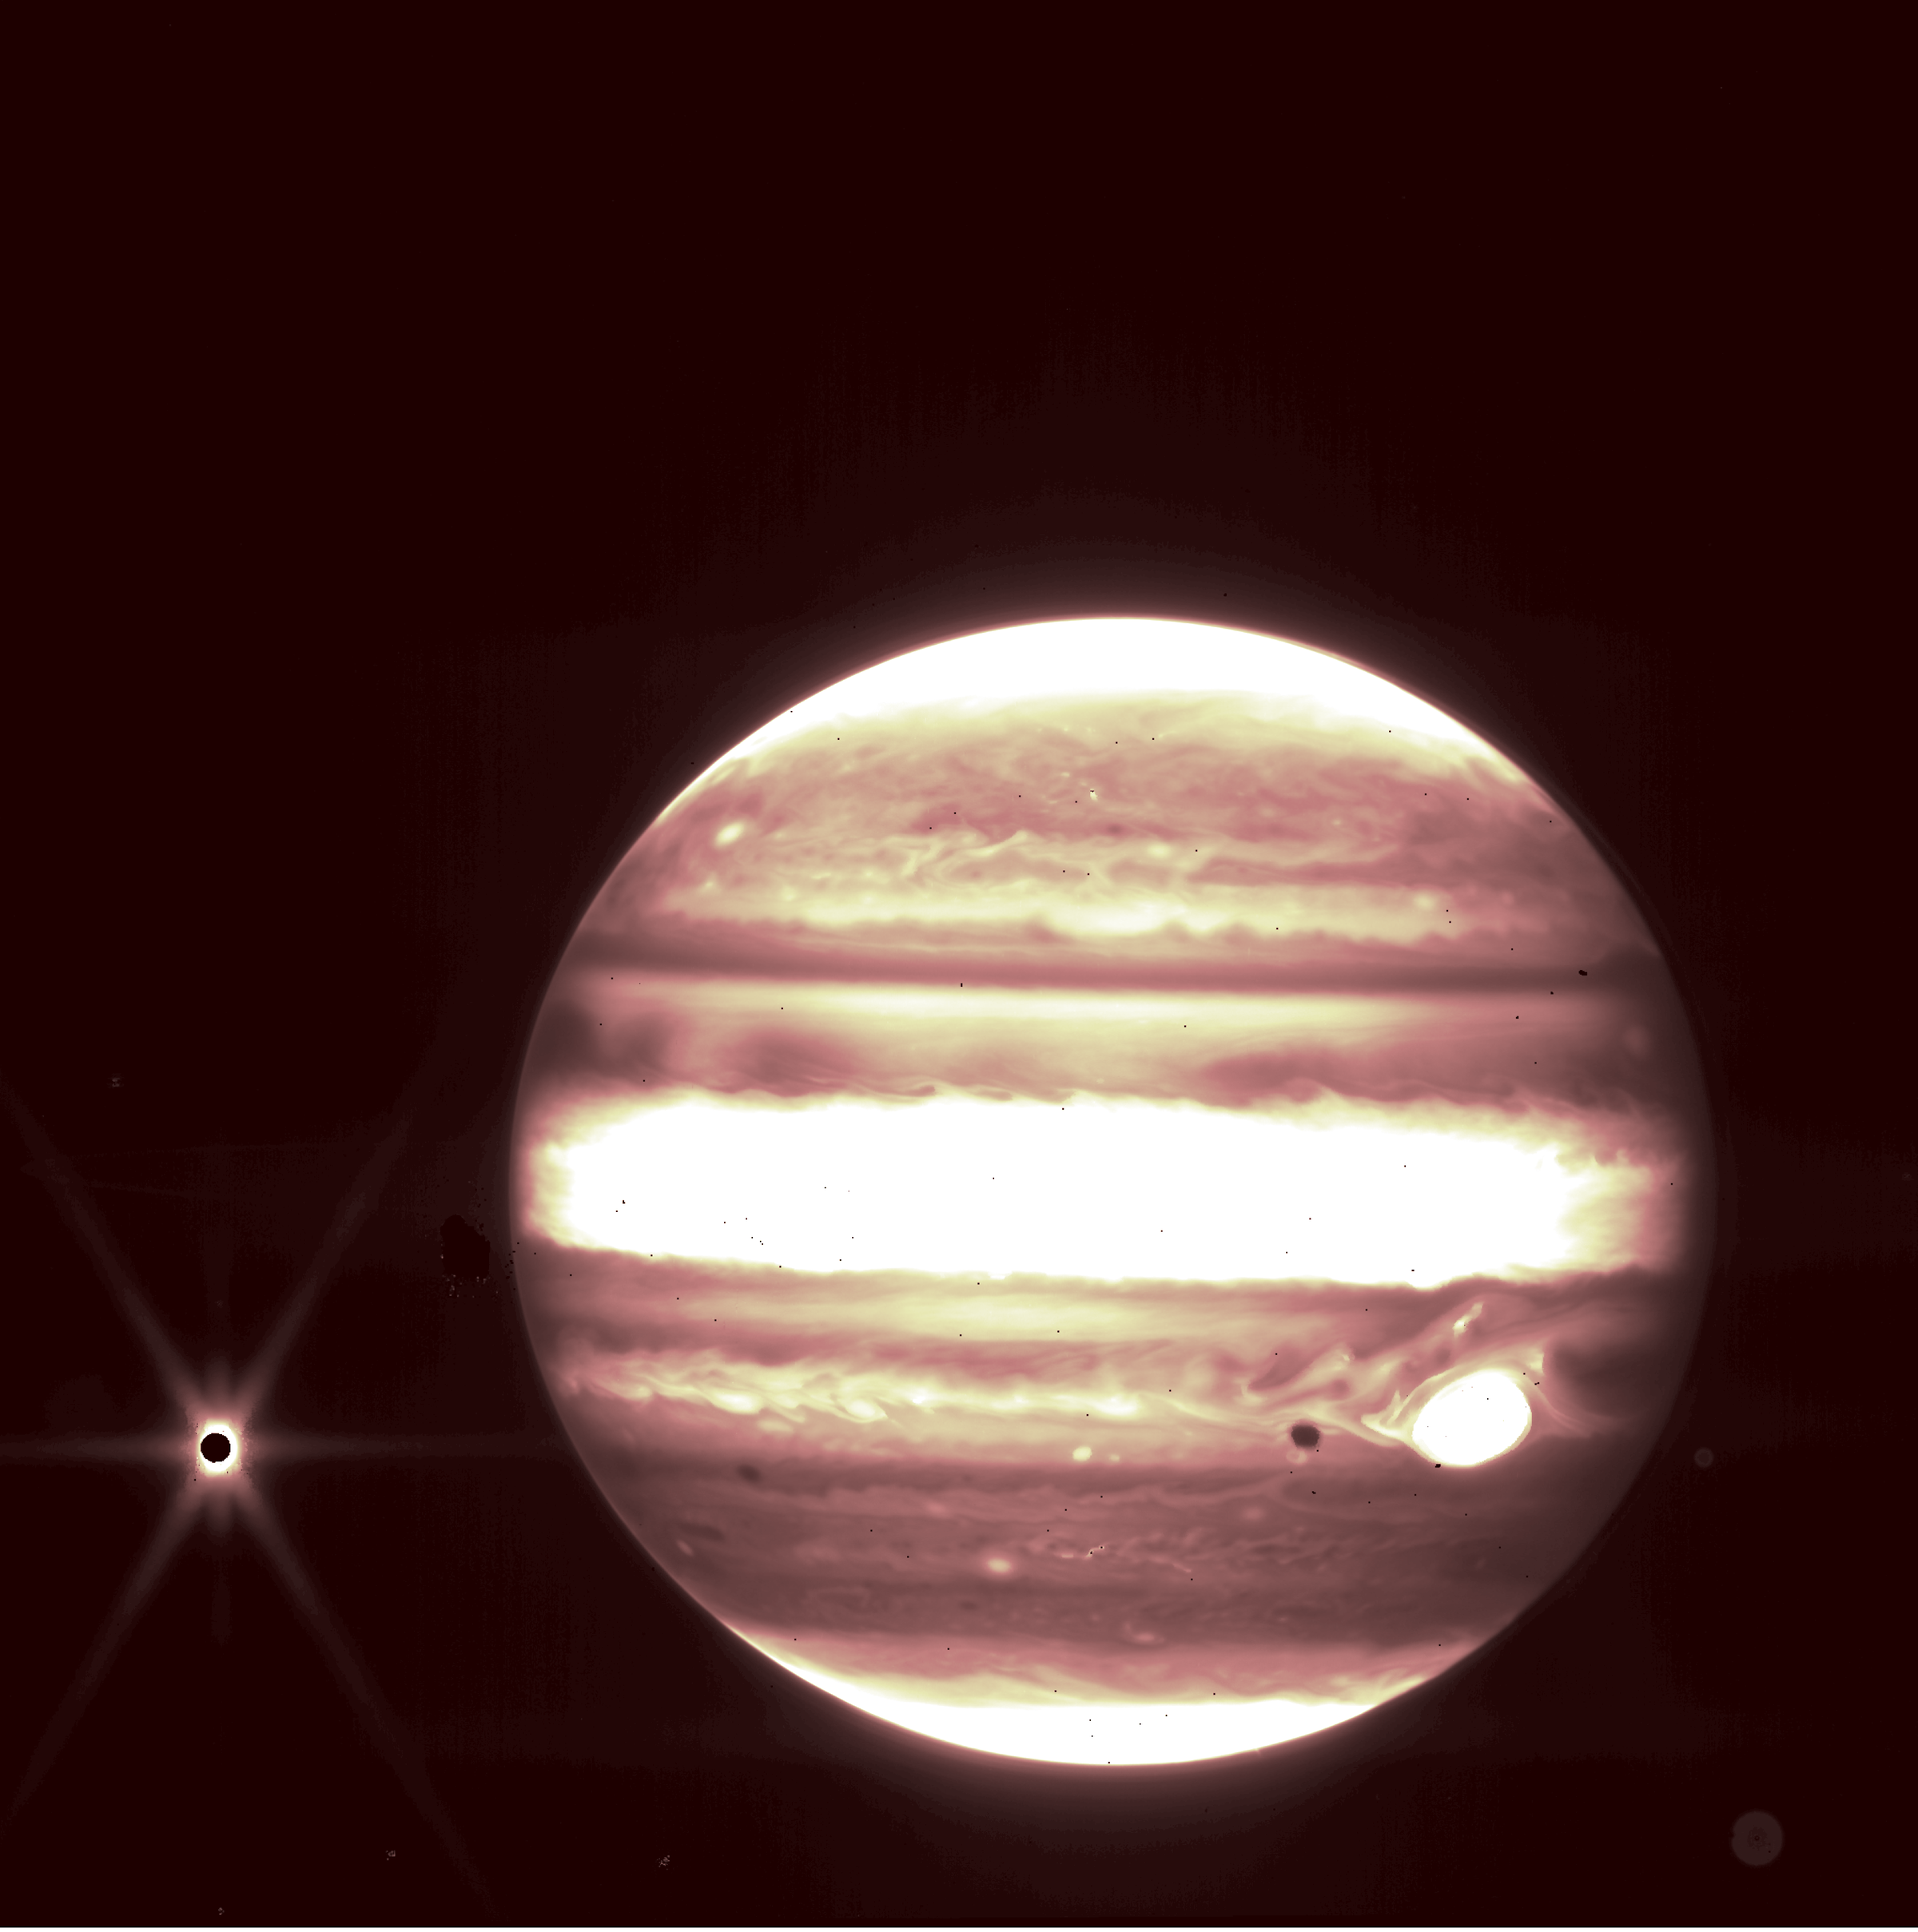 <em>Jupiter and its moon Europa seen through JWST’s NIRCam instrument 2.12 micron filter.</em>